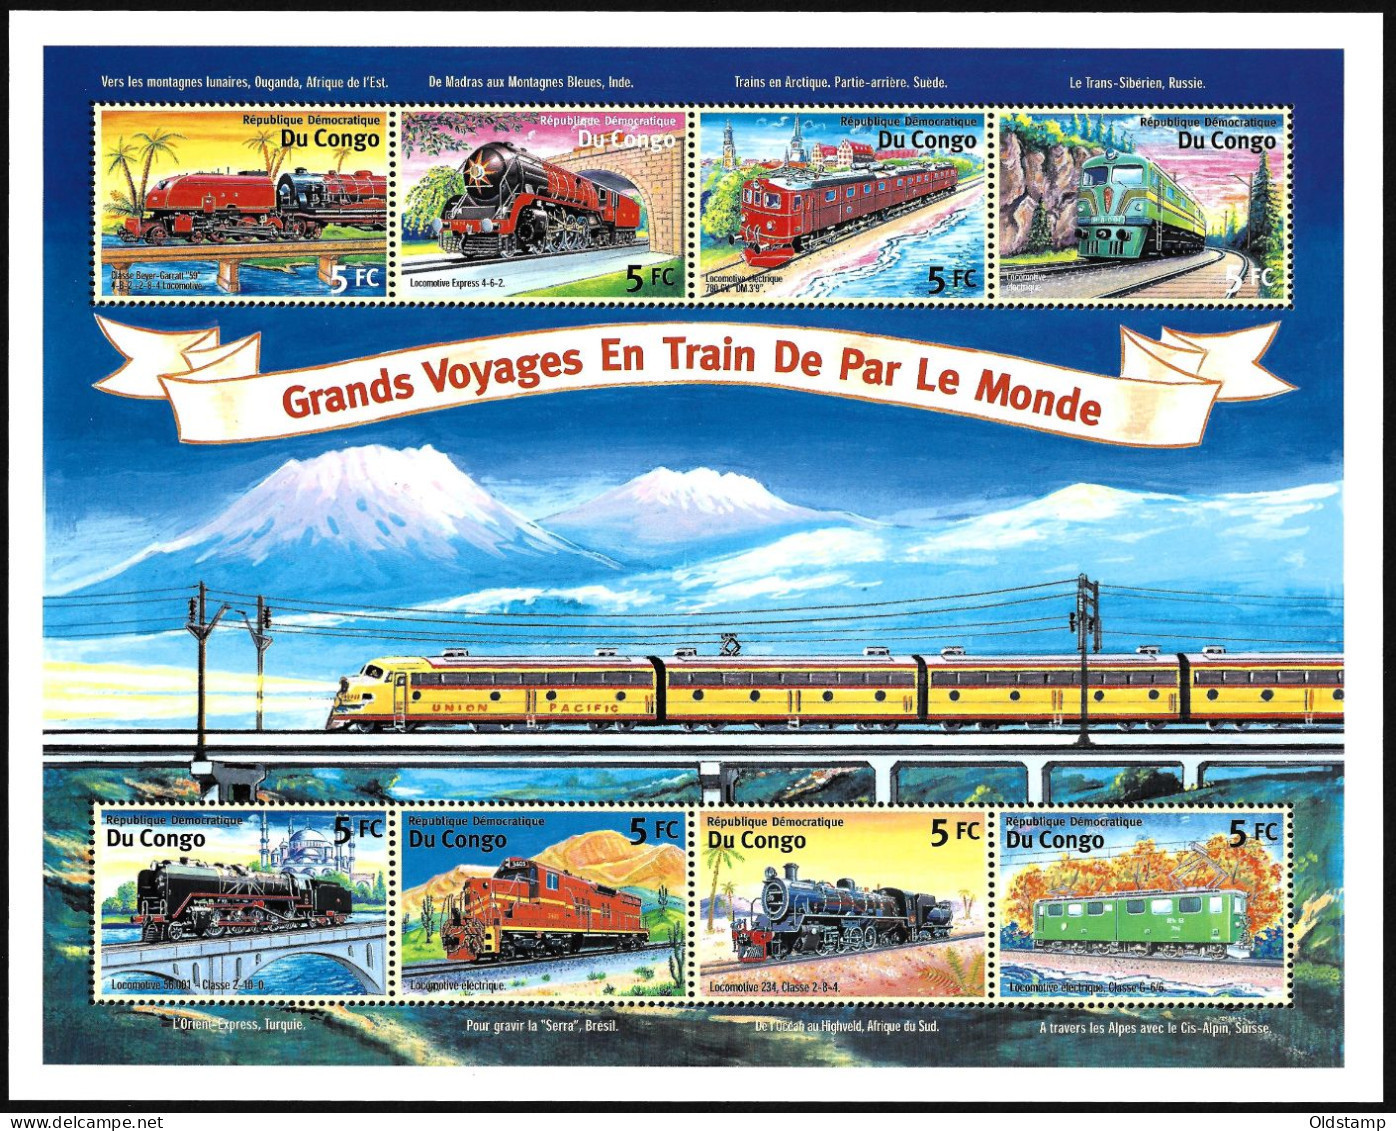 TRAINS Congo 2001 Railroad Steam Locomotive Railways Grand Voyages En Train De Par Le Monde Stamps Block - Eisenbahnen